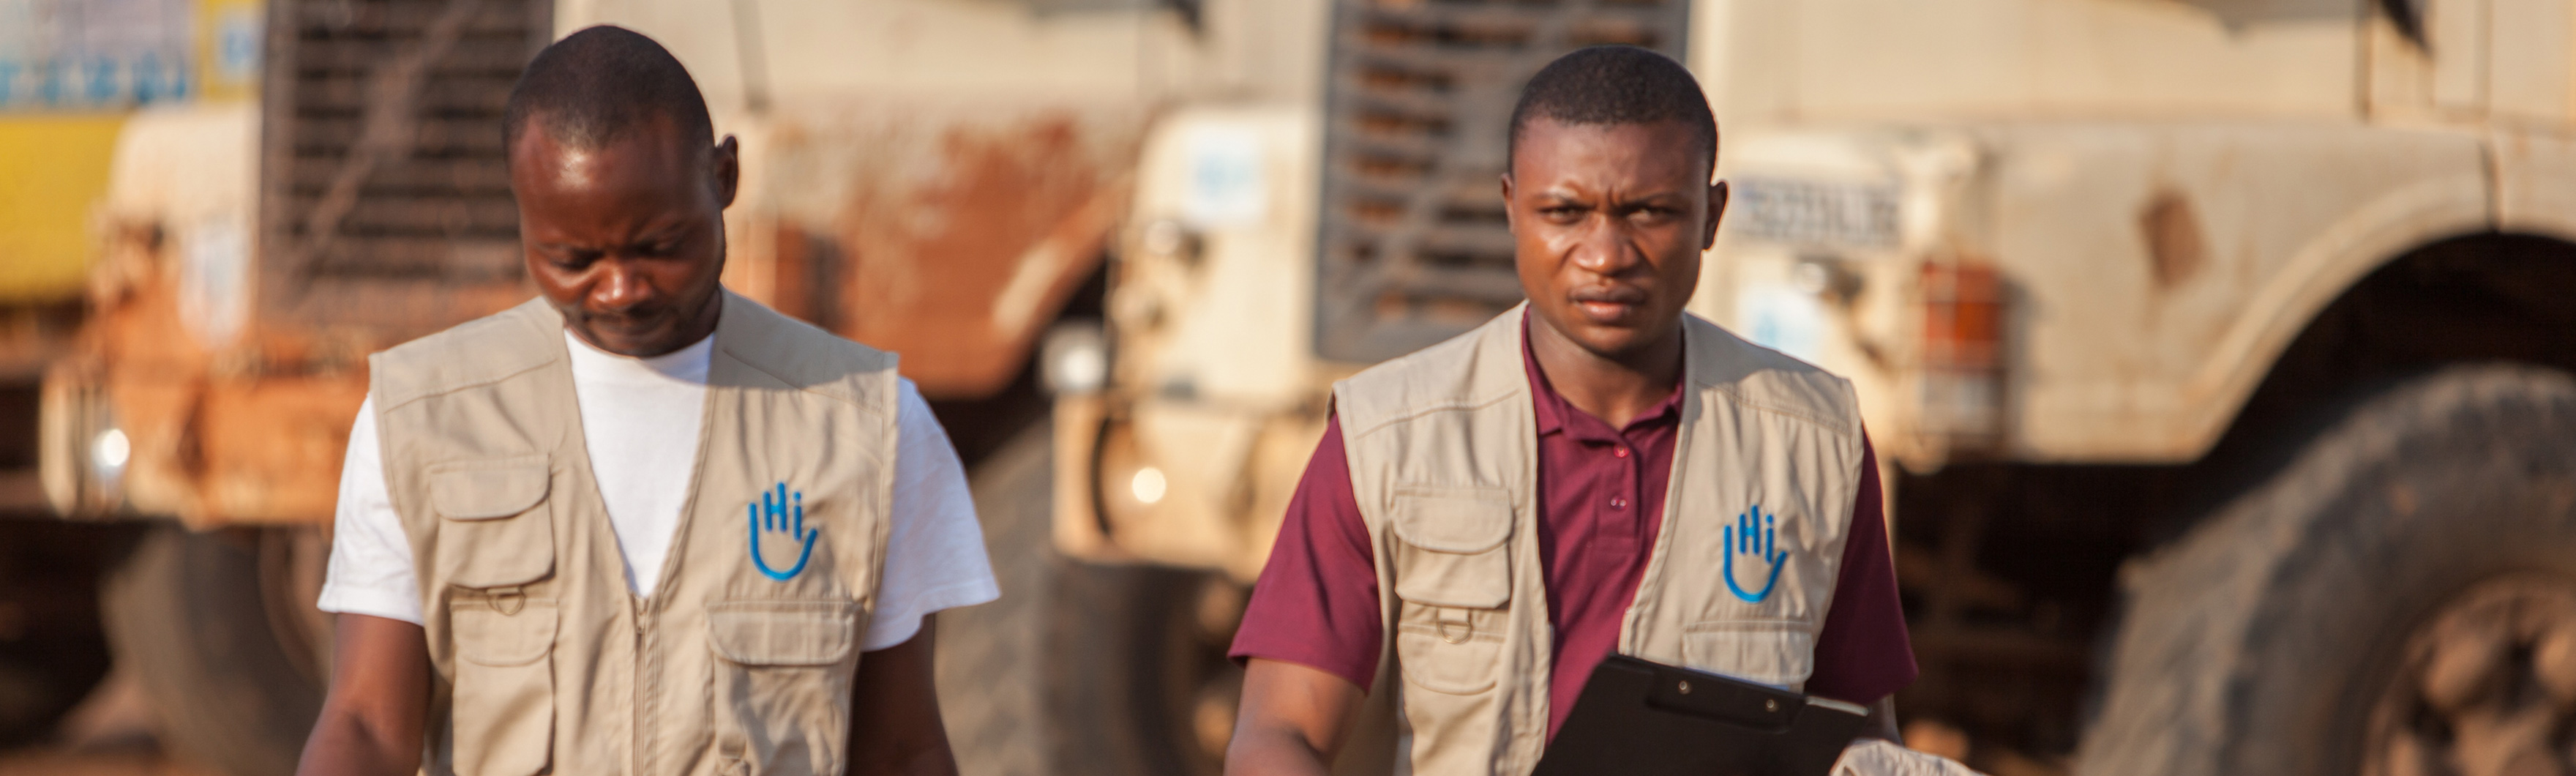 RDC, Edouard et Sylvain, du projet plateforme logistique HI mis en place en réponse à la crise humanitaire du Kasaï.